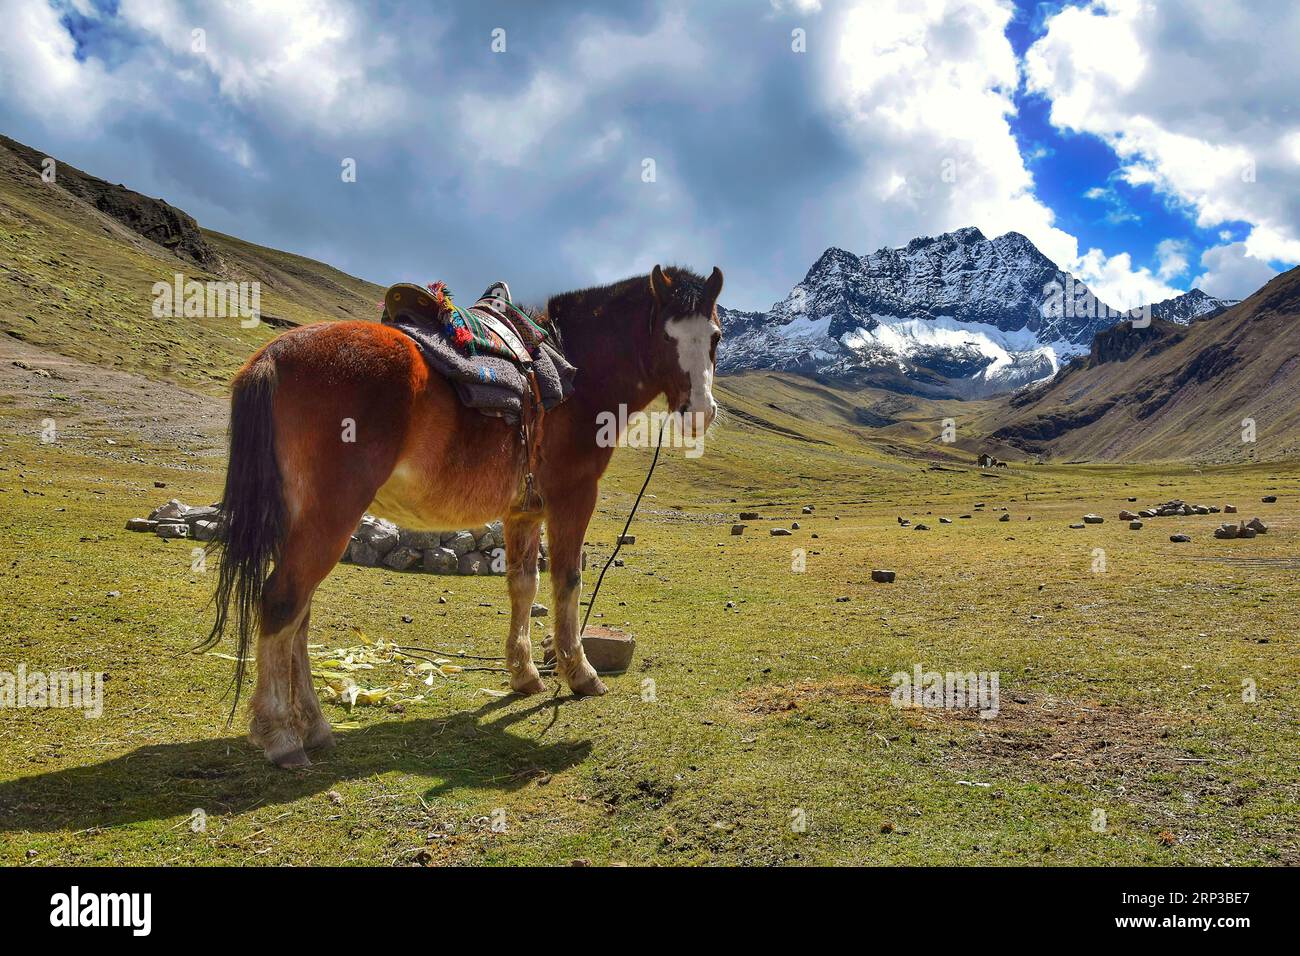 Horse at the Vinicunca mountains near Cuzco Stock Photo